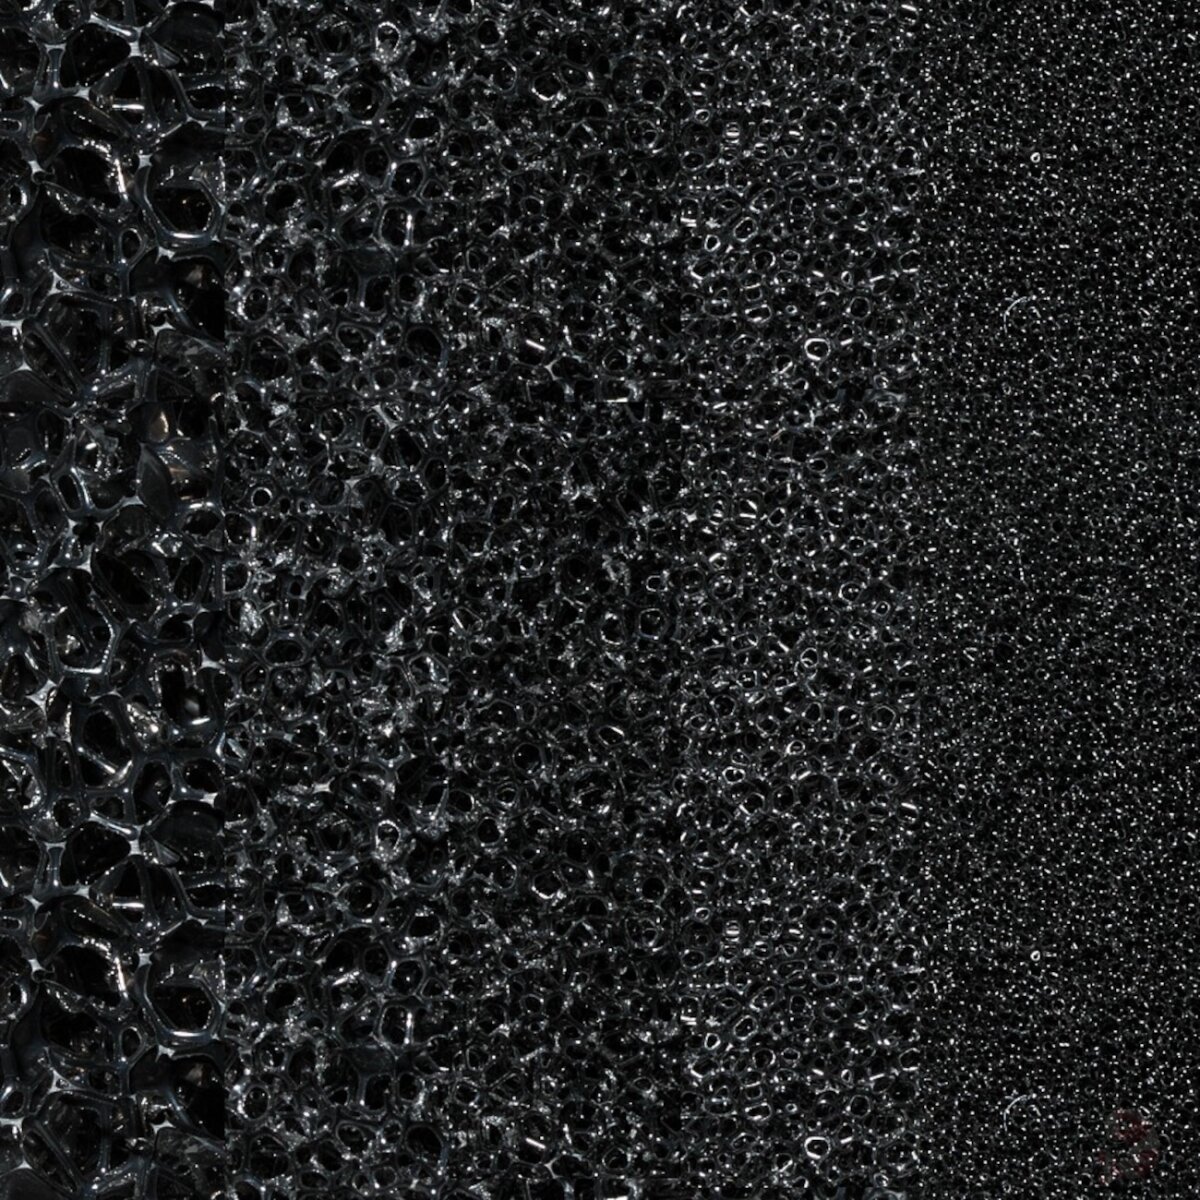 Filtermatte schwarz, 50 x 50 x 3 cm, 10 bis 60 ppi